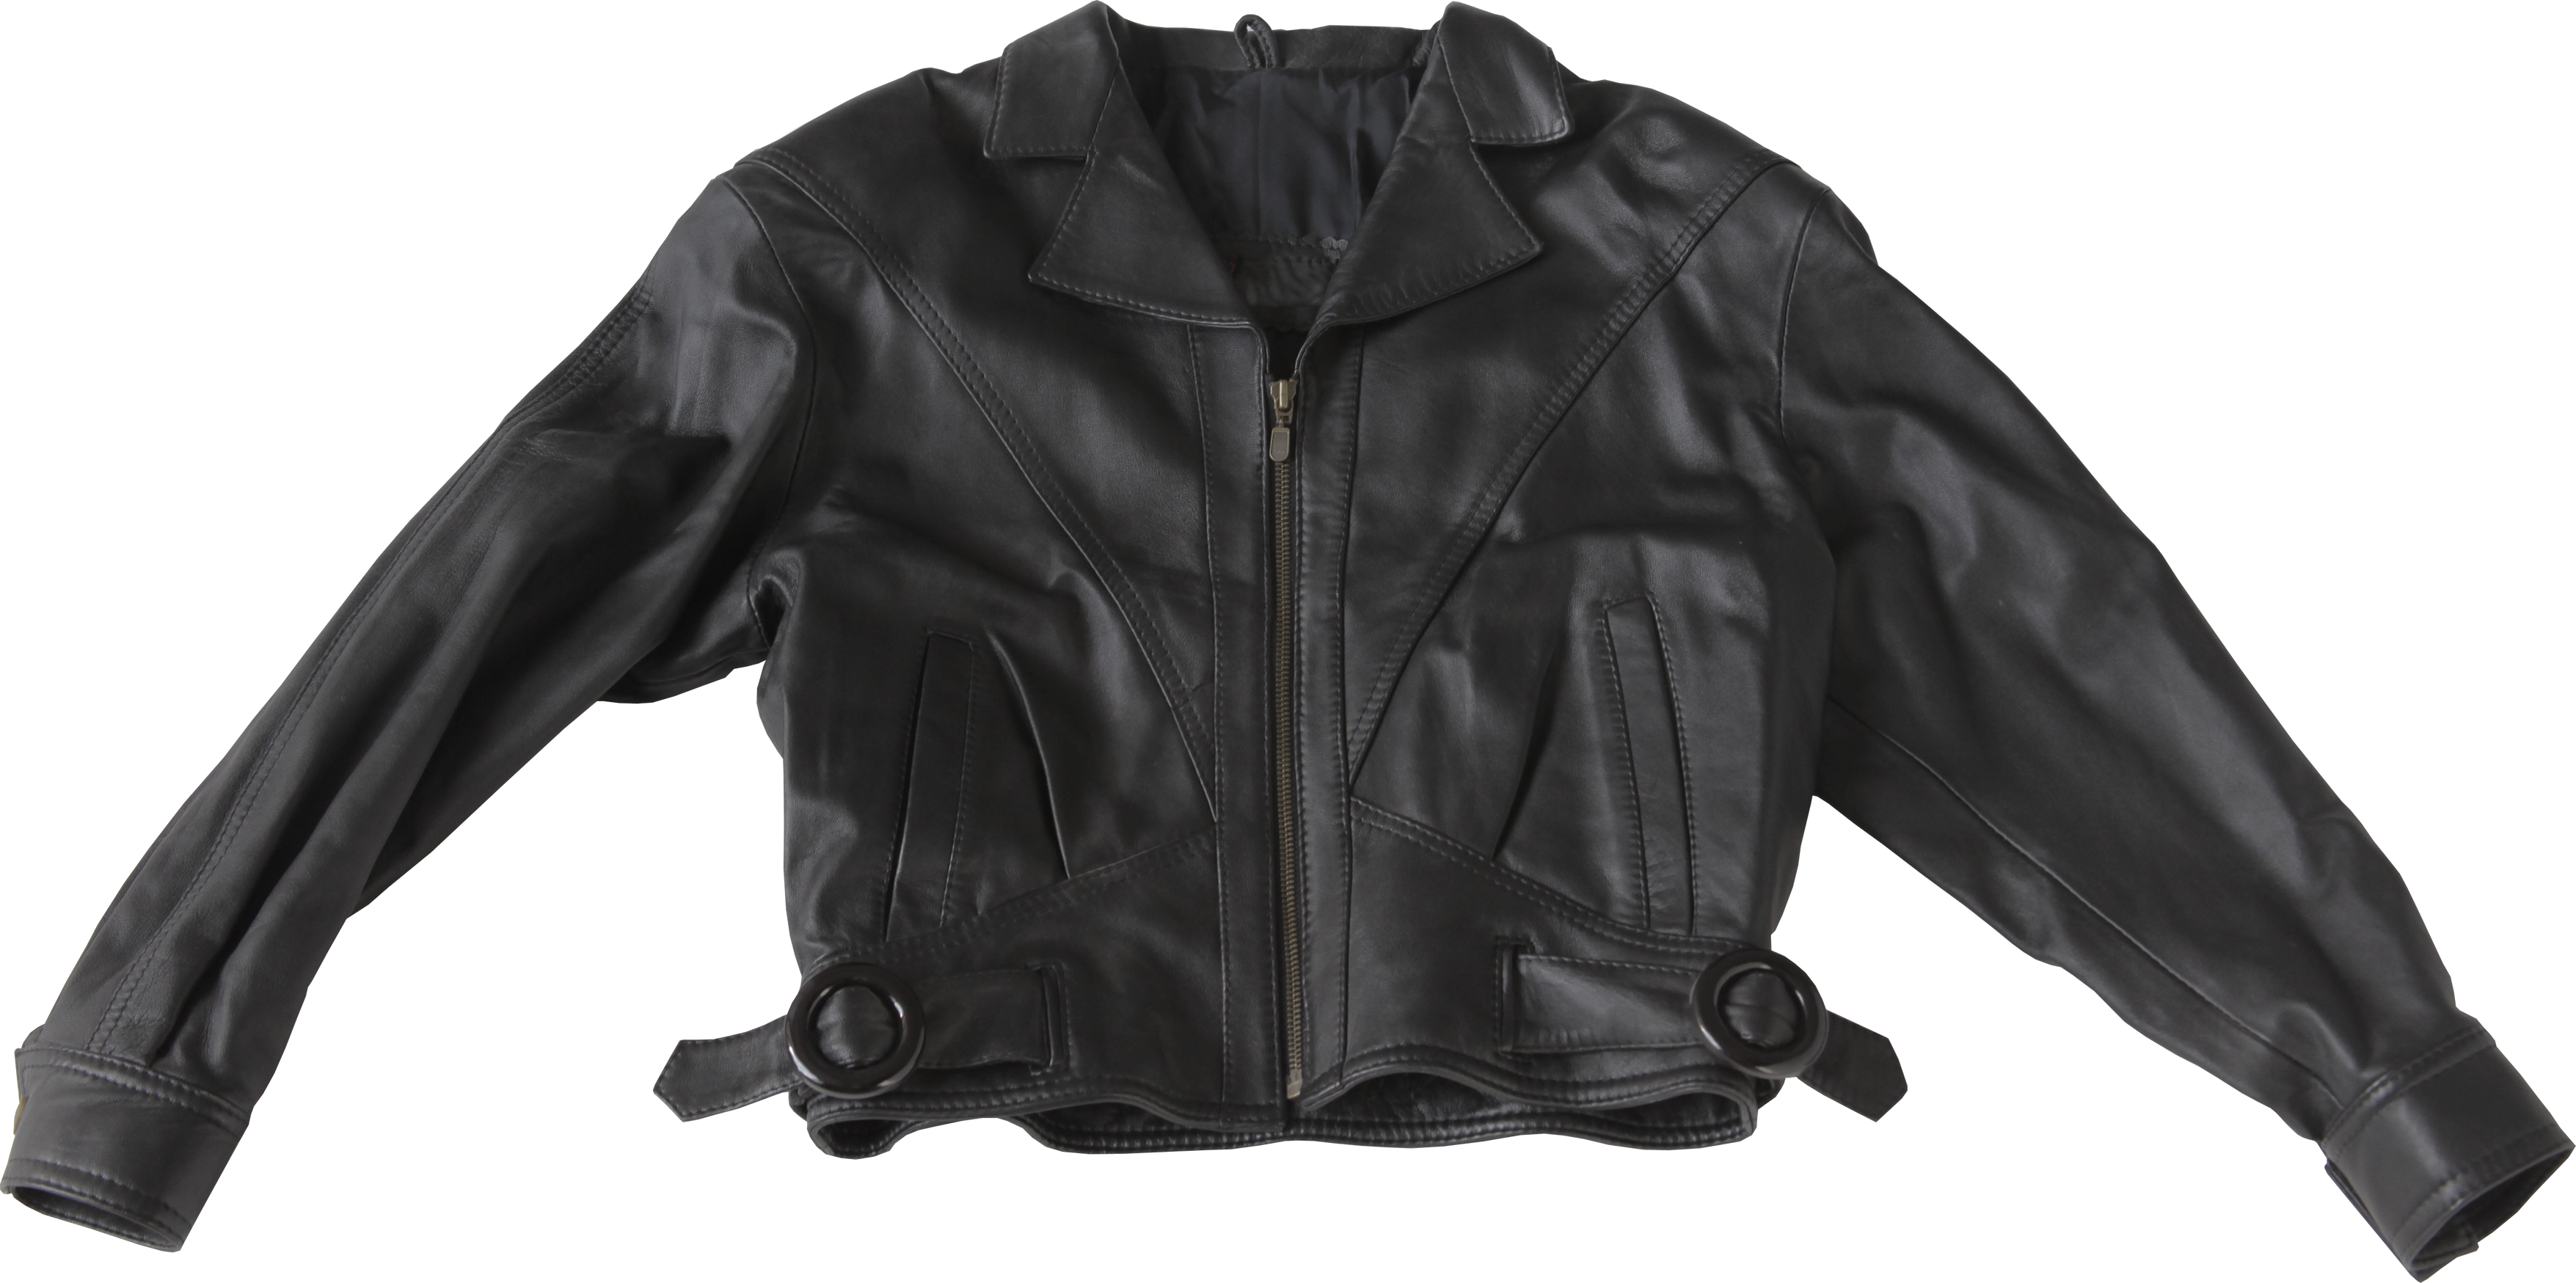 Descarga gratuita de la chaqueta de cuero negro PNG